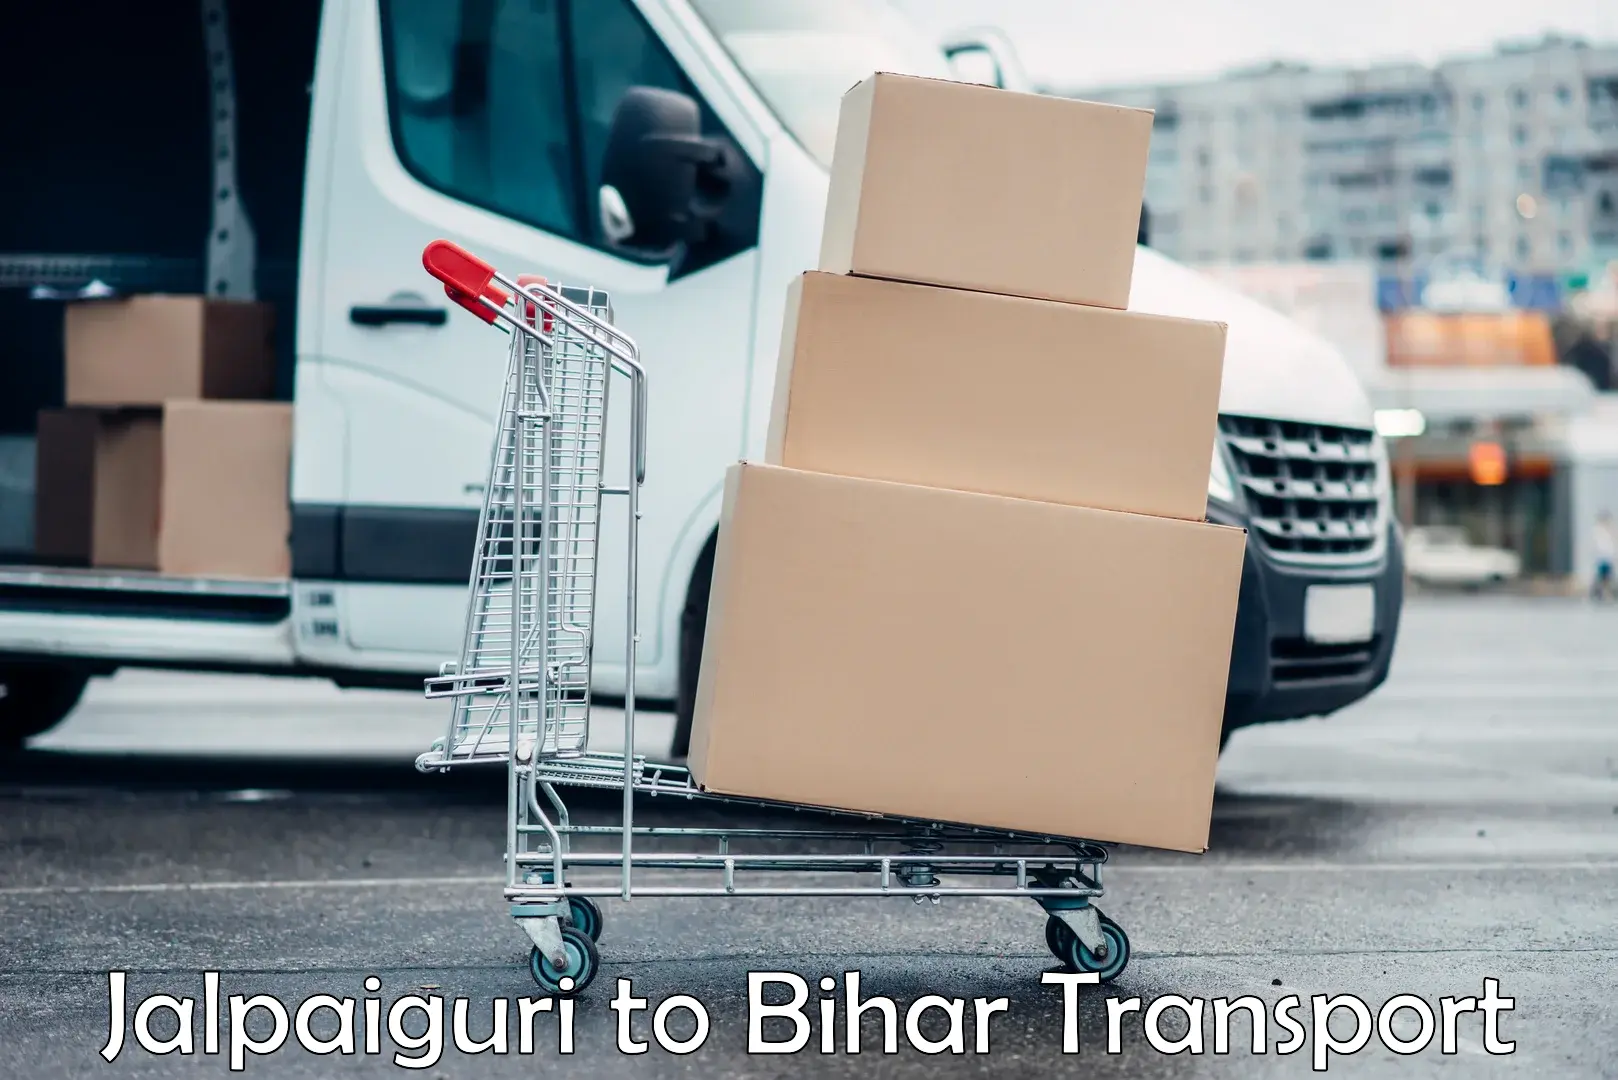 Truck transport companies in India Jalpaiguri to Aurangabad Bihar